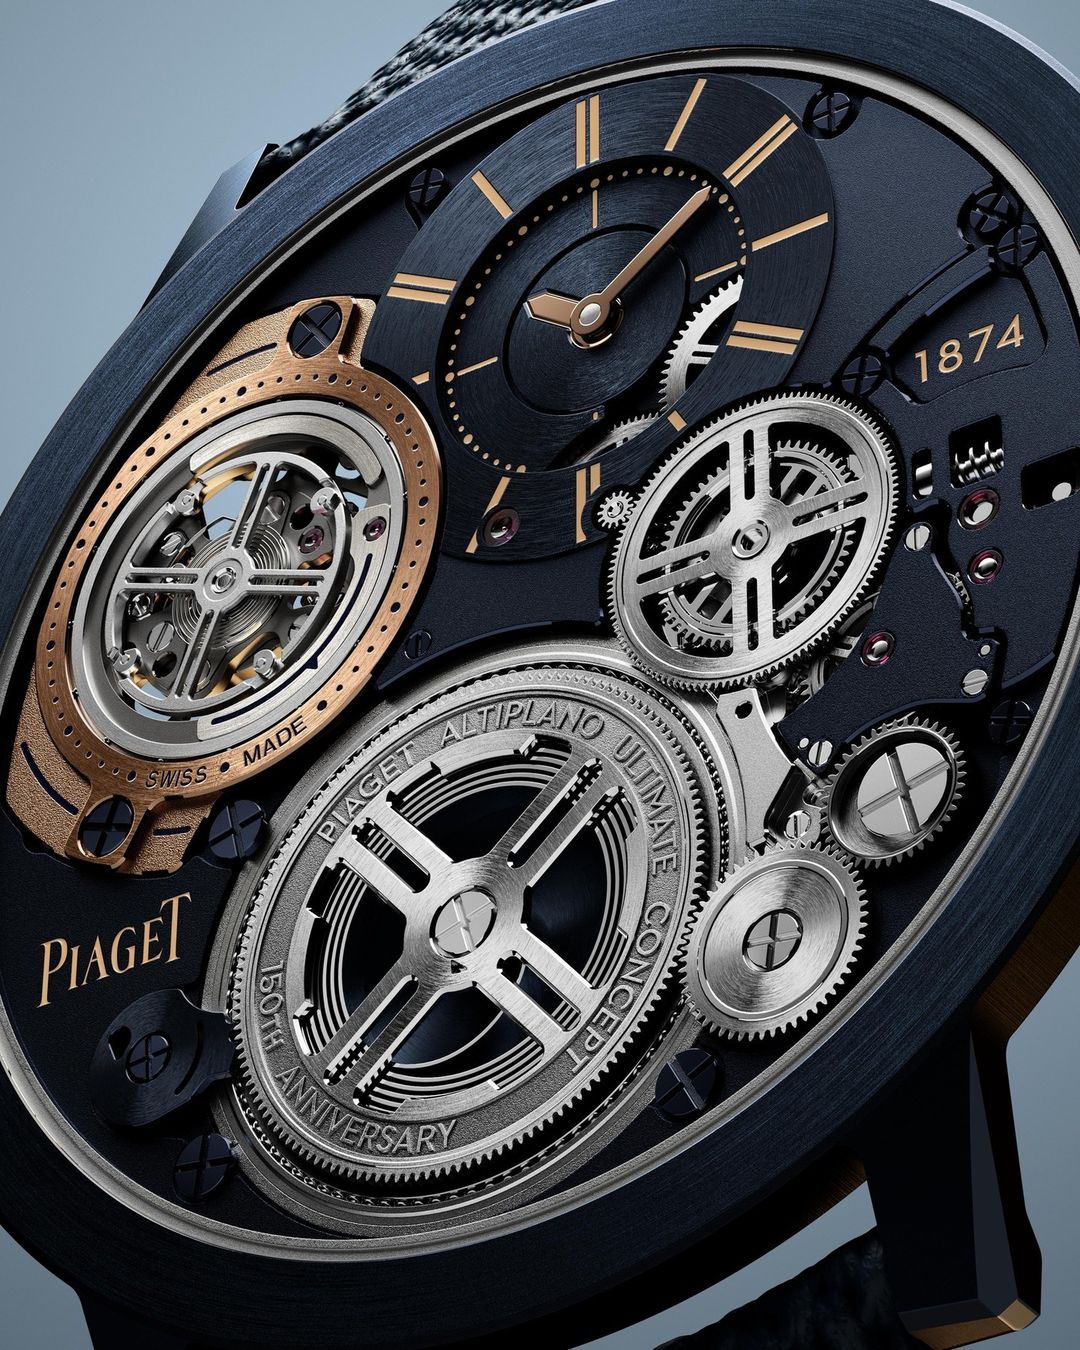 Piaget A.U.C Tourbillon: Giới hạn nào cho đồng hồ đeo tay? 15